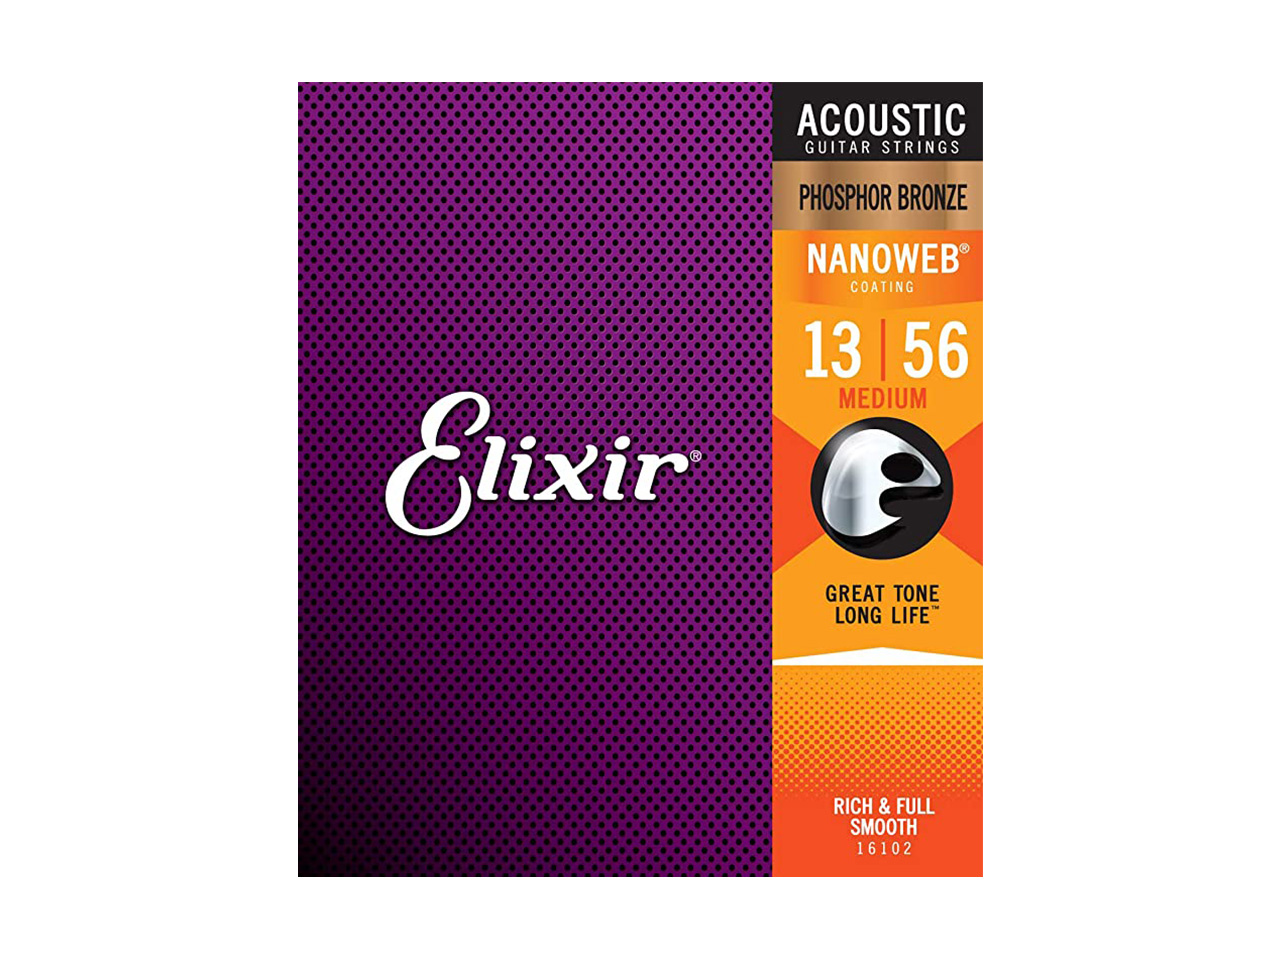 Elixir(エリクサー) Acoustic Phosphor Bronze Medium【16102】/ 013-056 (アコースティックギター弦)